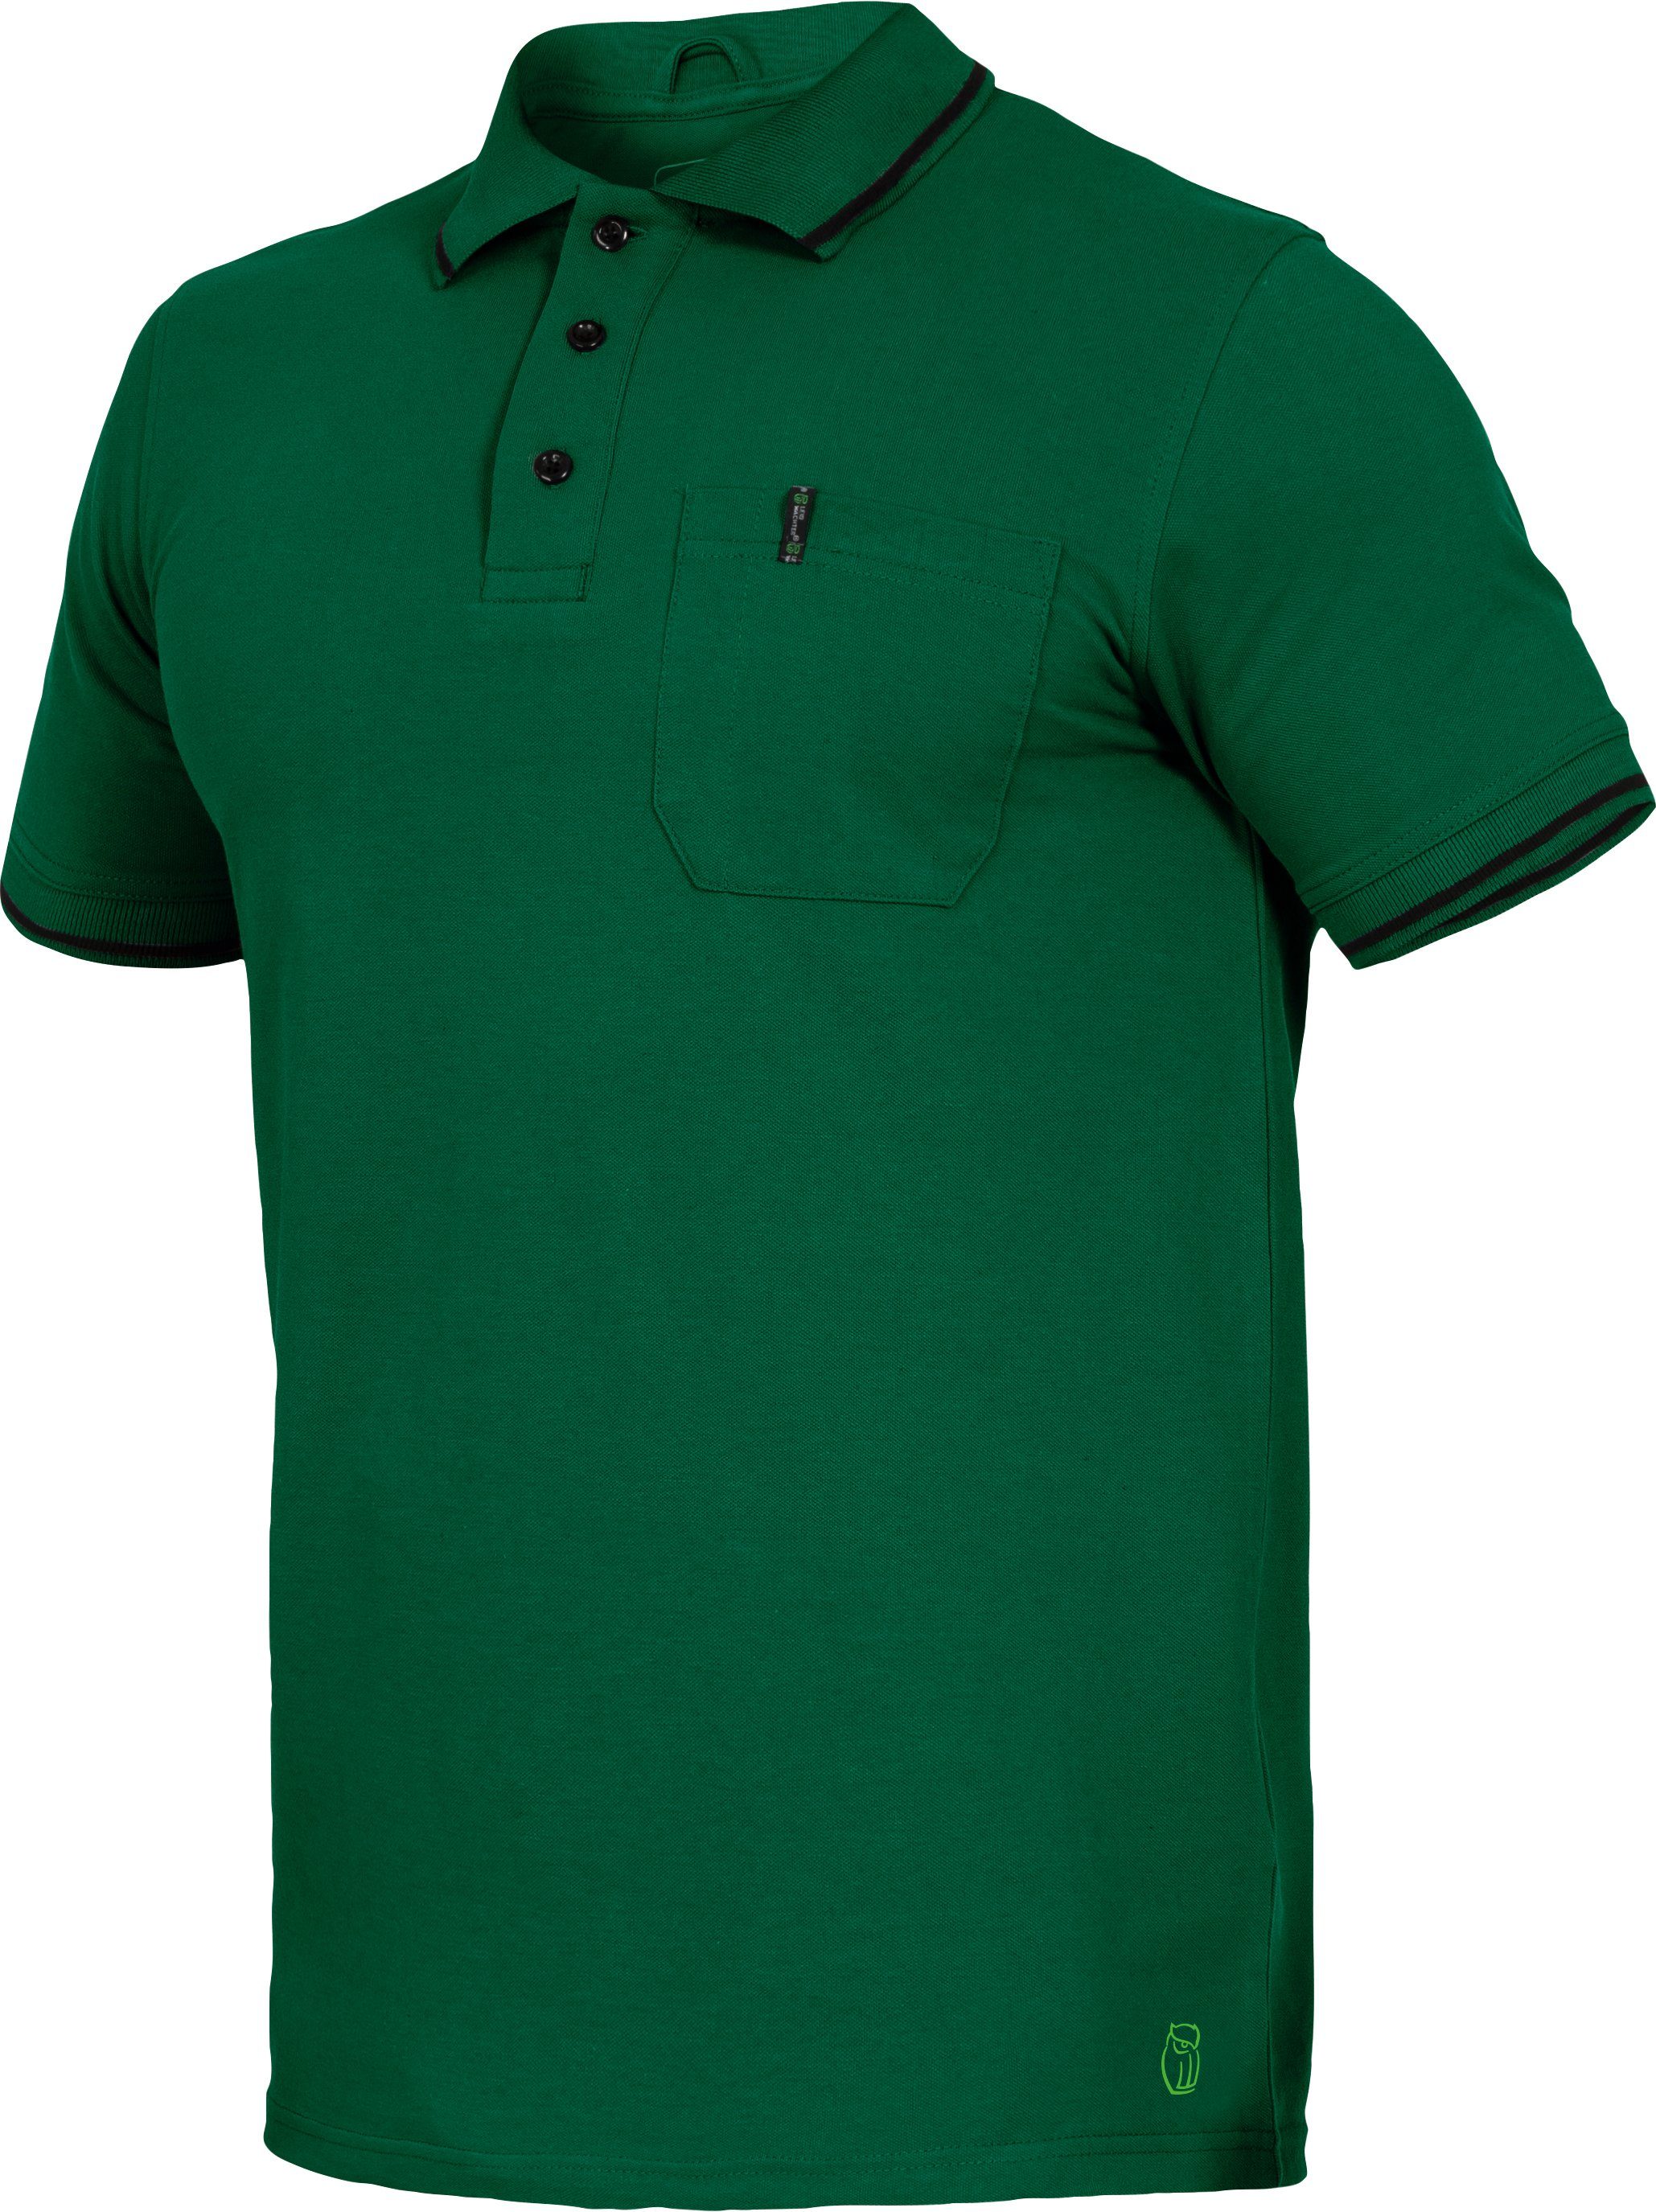 Leibwächter Poloshirt Flex-Line Herren Poloshirt grün